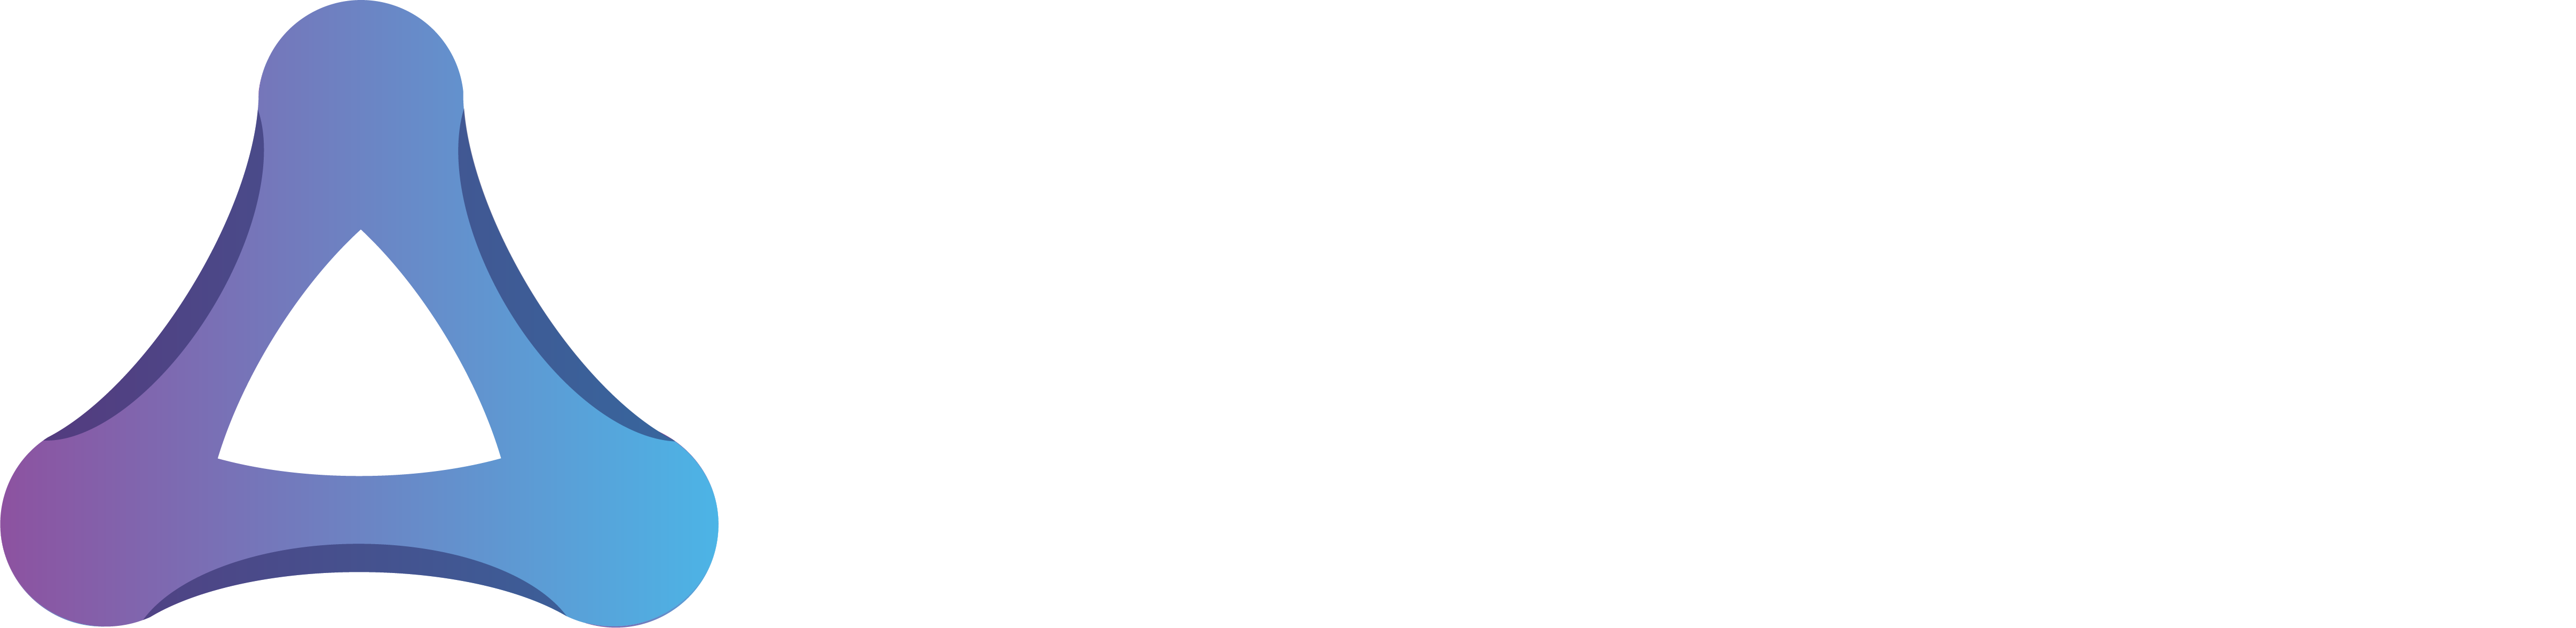 Astriosoft